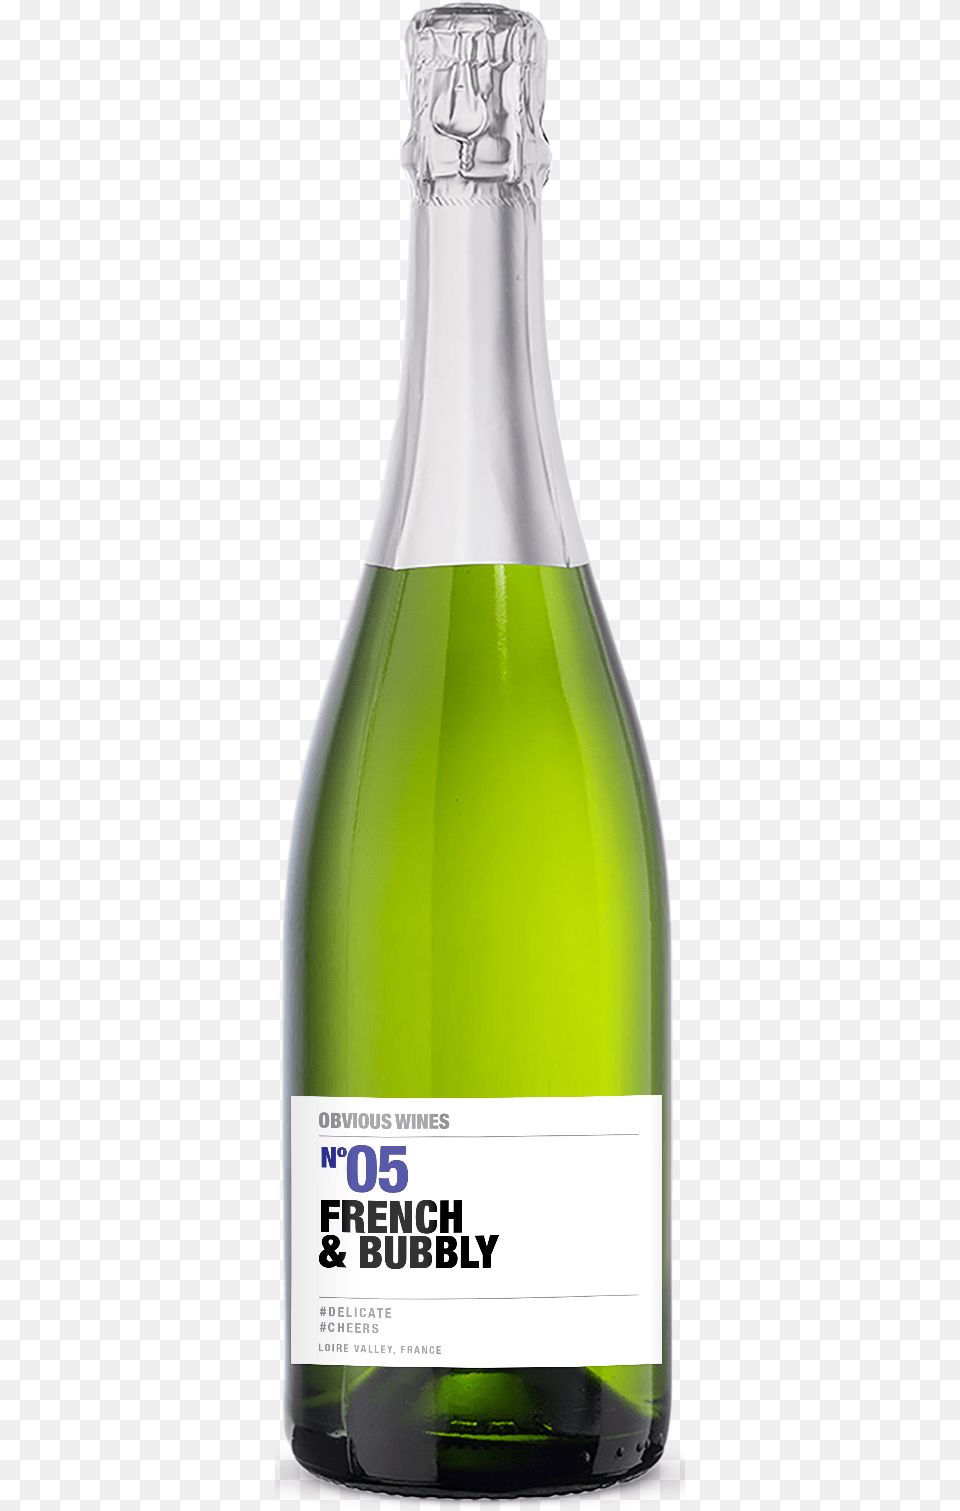 Glass Bottle, Beverage, Alcohol, Beer, Sake Png Image